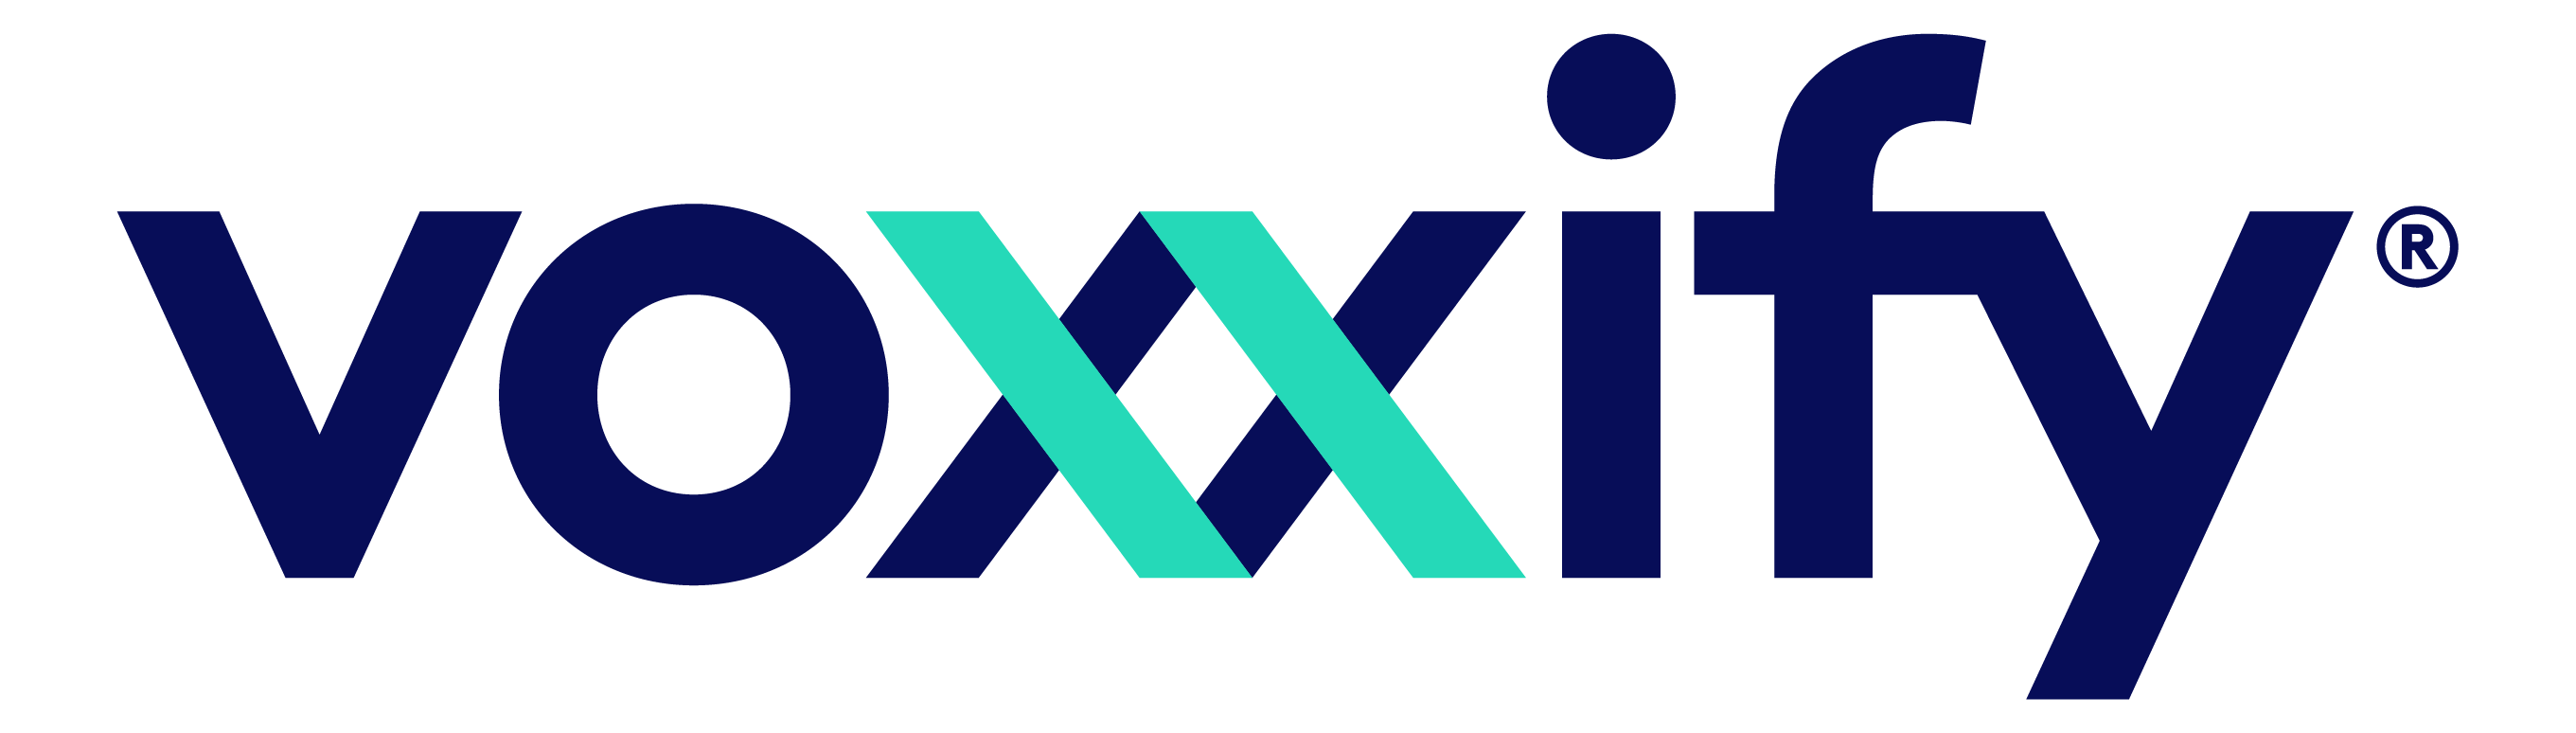 Voxxify Logo